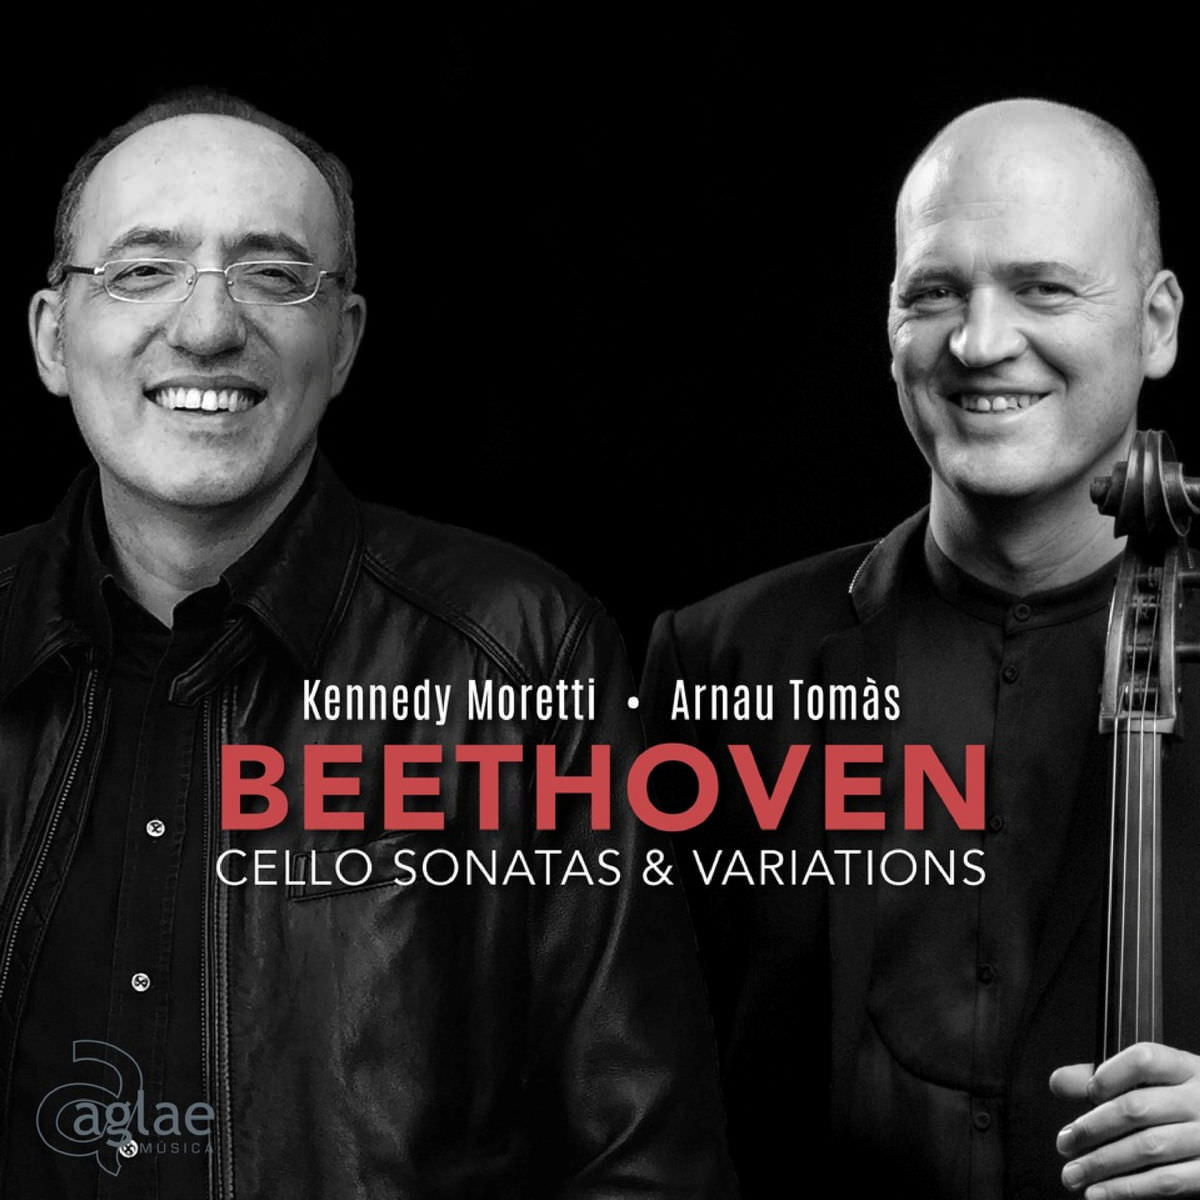 Arnau Tomas & Kennedy Moretti – Beethoven: Cello Sonatas & Variations (2018) [FLAC 24bit/96kHz]